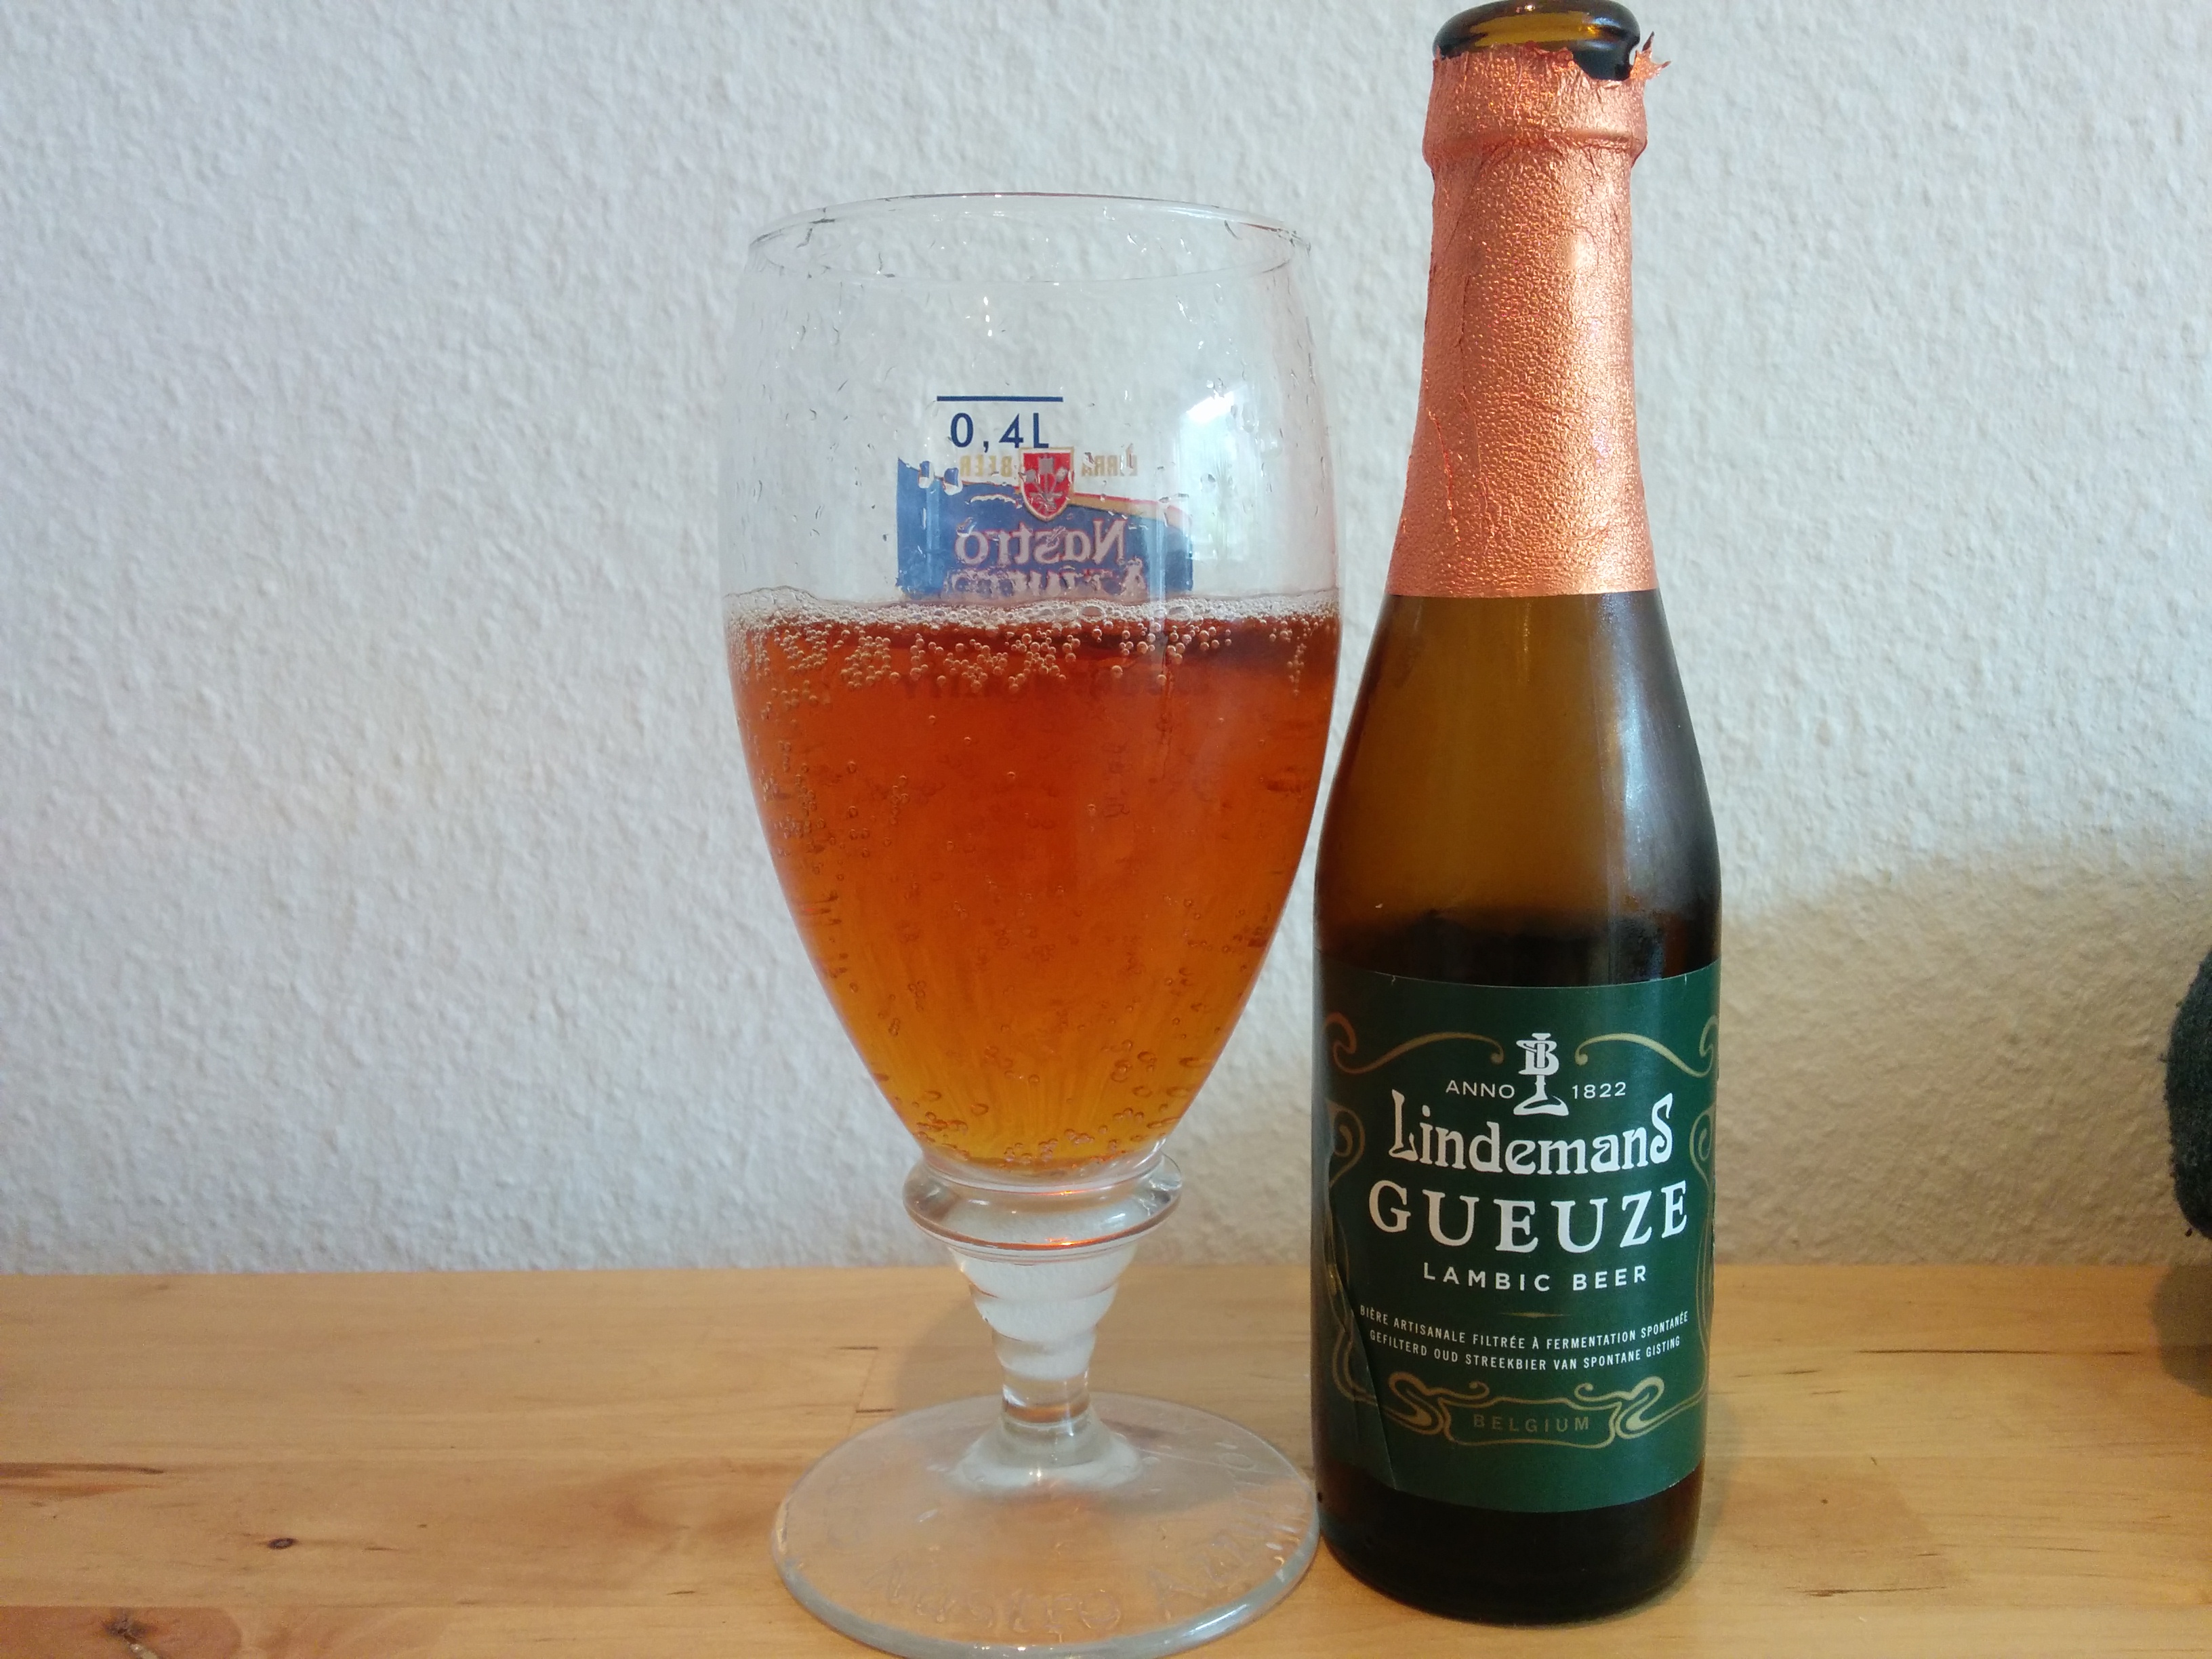 Lindemans Gueuze - I glas og flaske